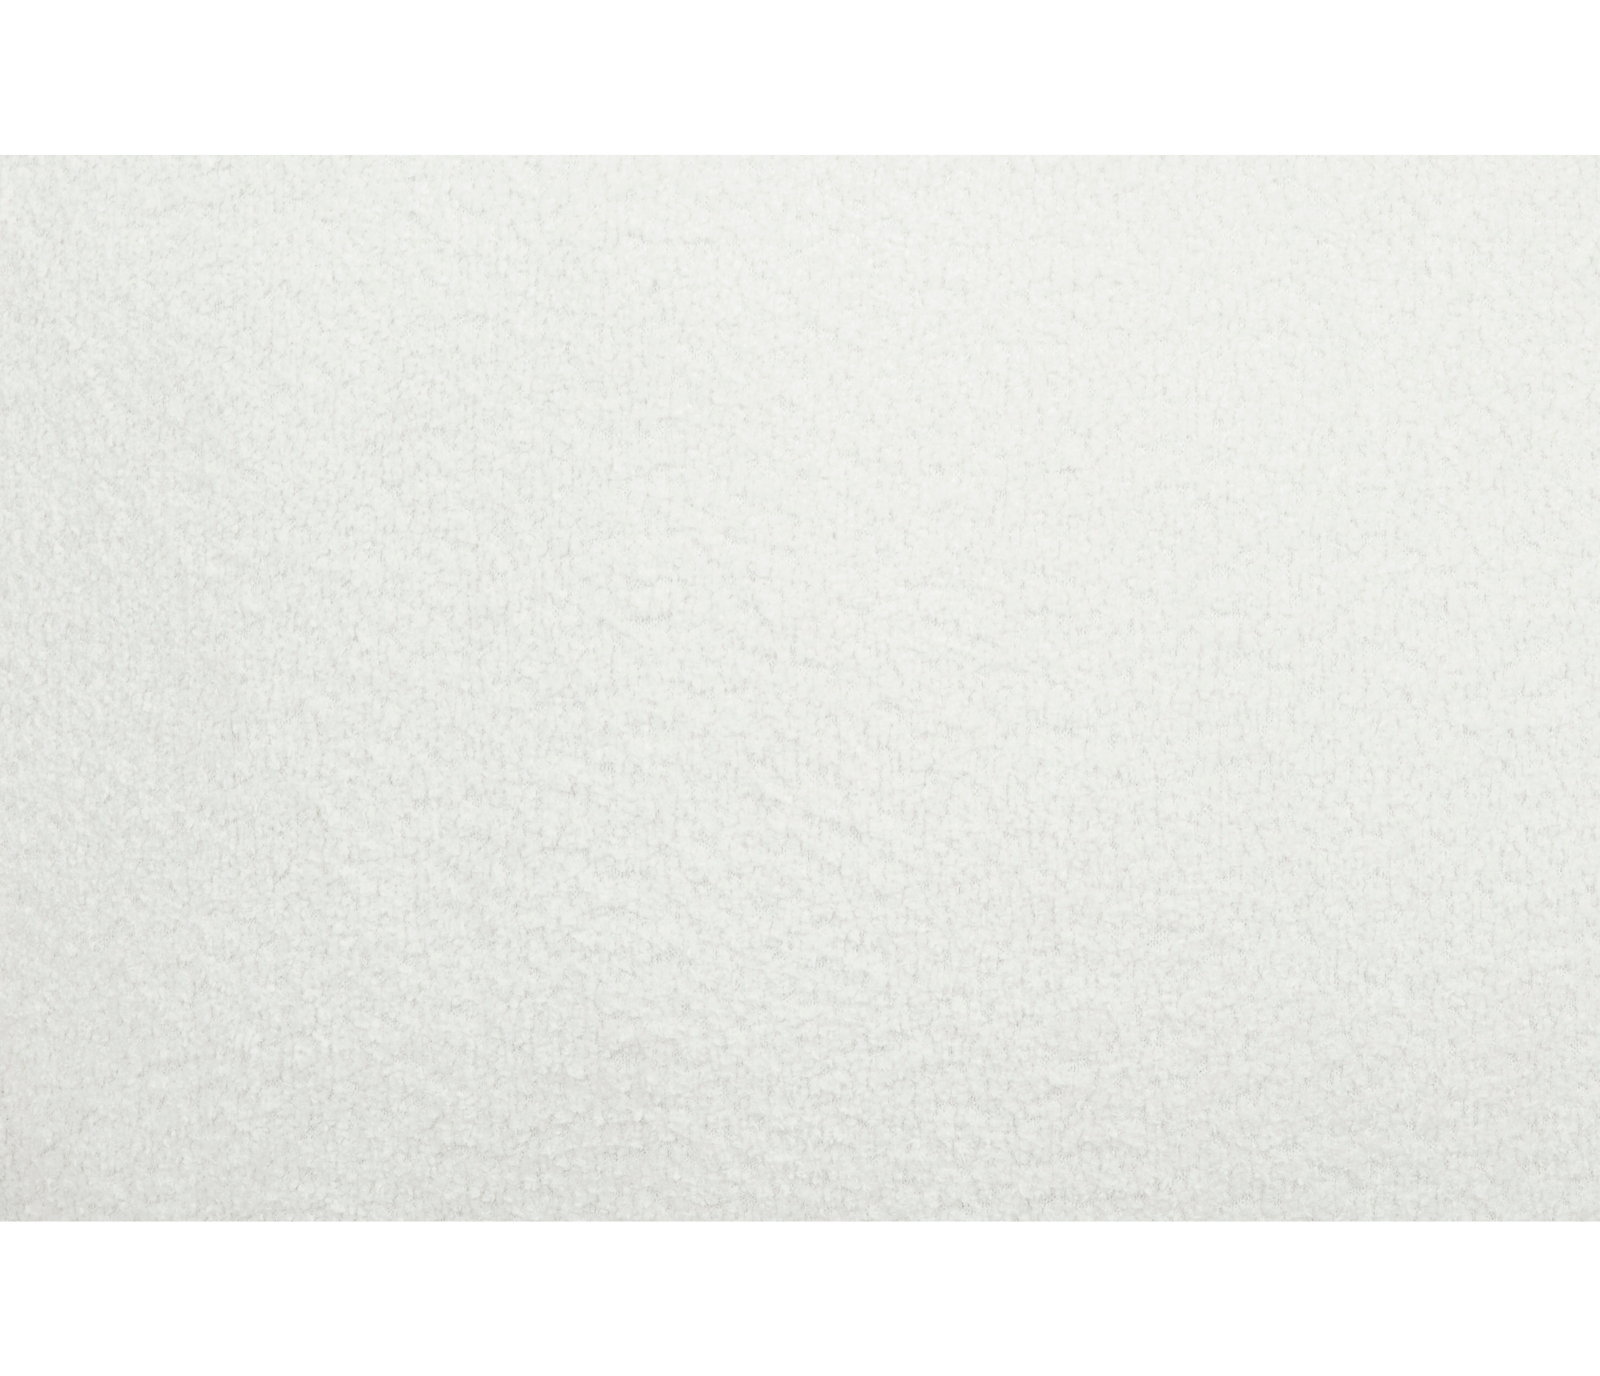 Alba Curve Sofa - Ivory Boucle Fabric